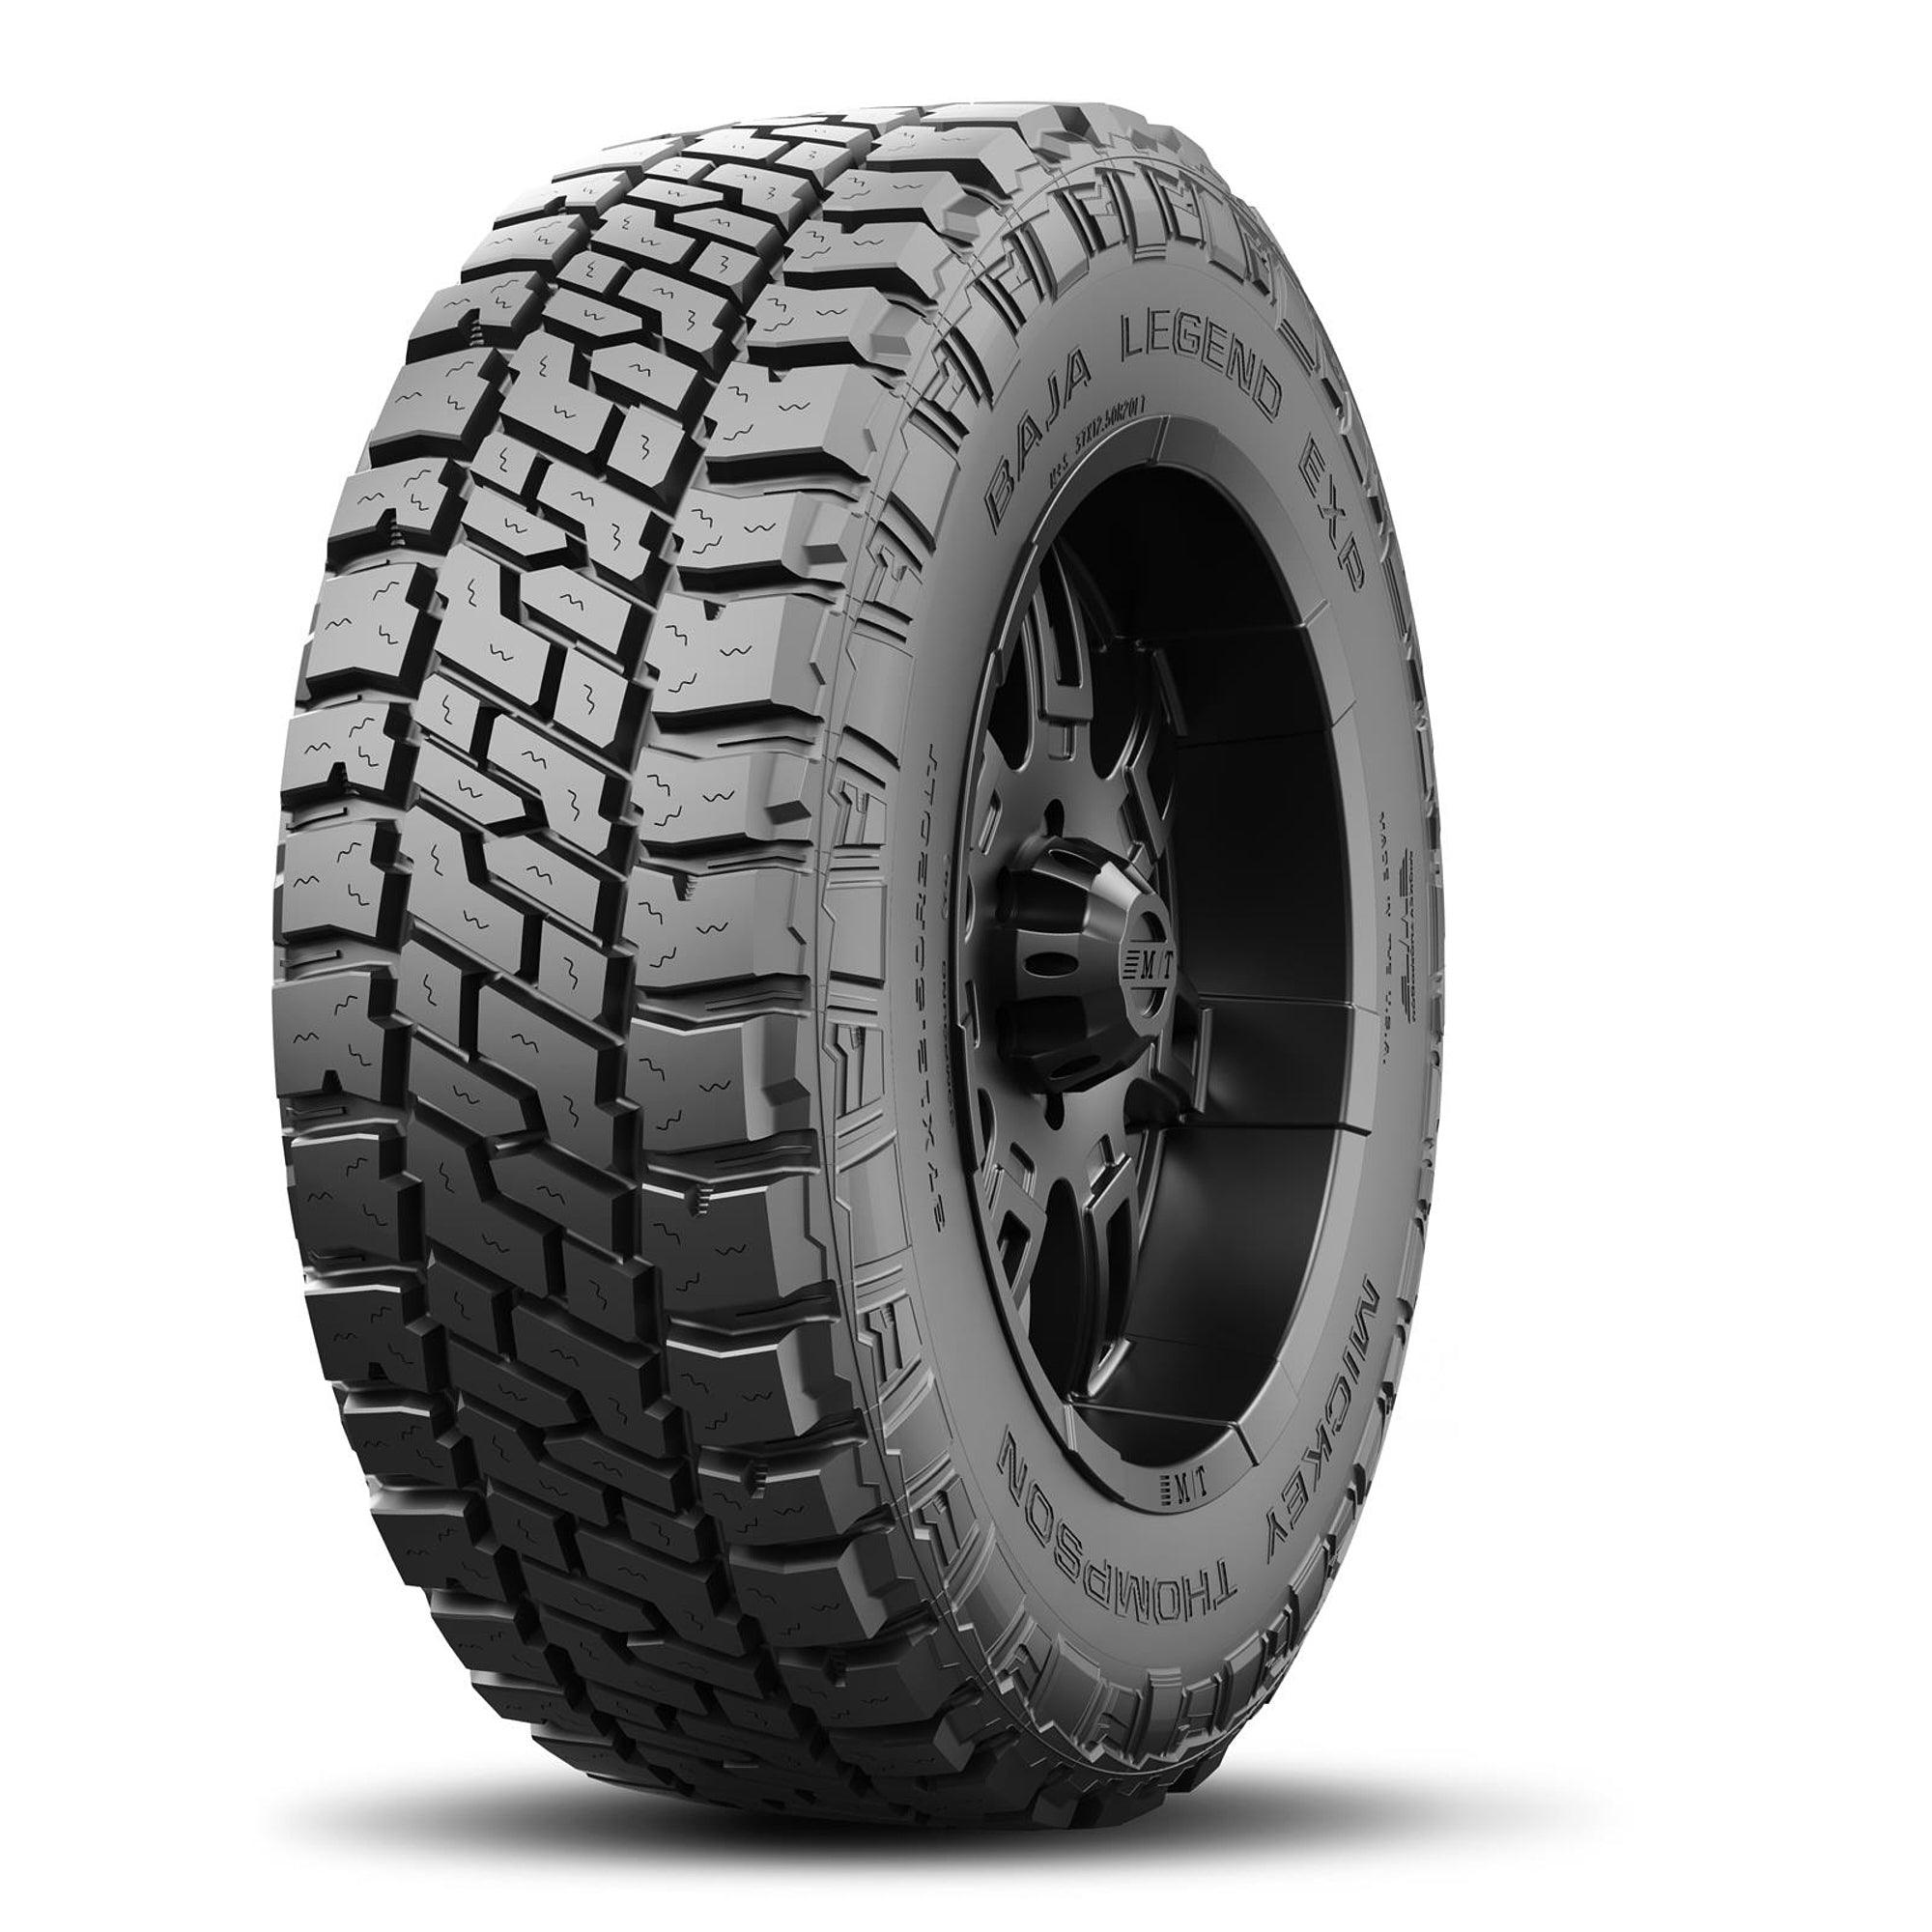 Baja Legend EXP Tire LT245/70R16 118/115Q - Burlile Performance Products